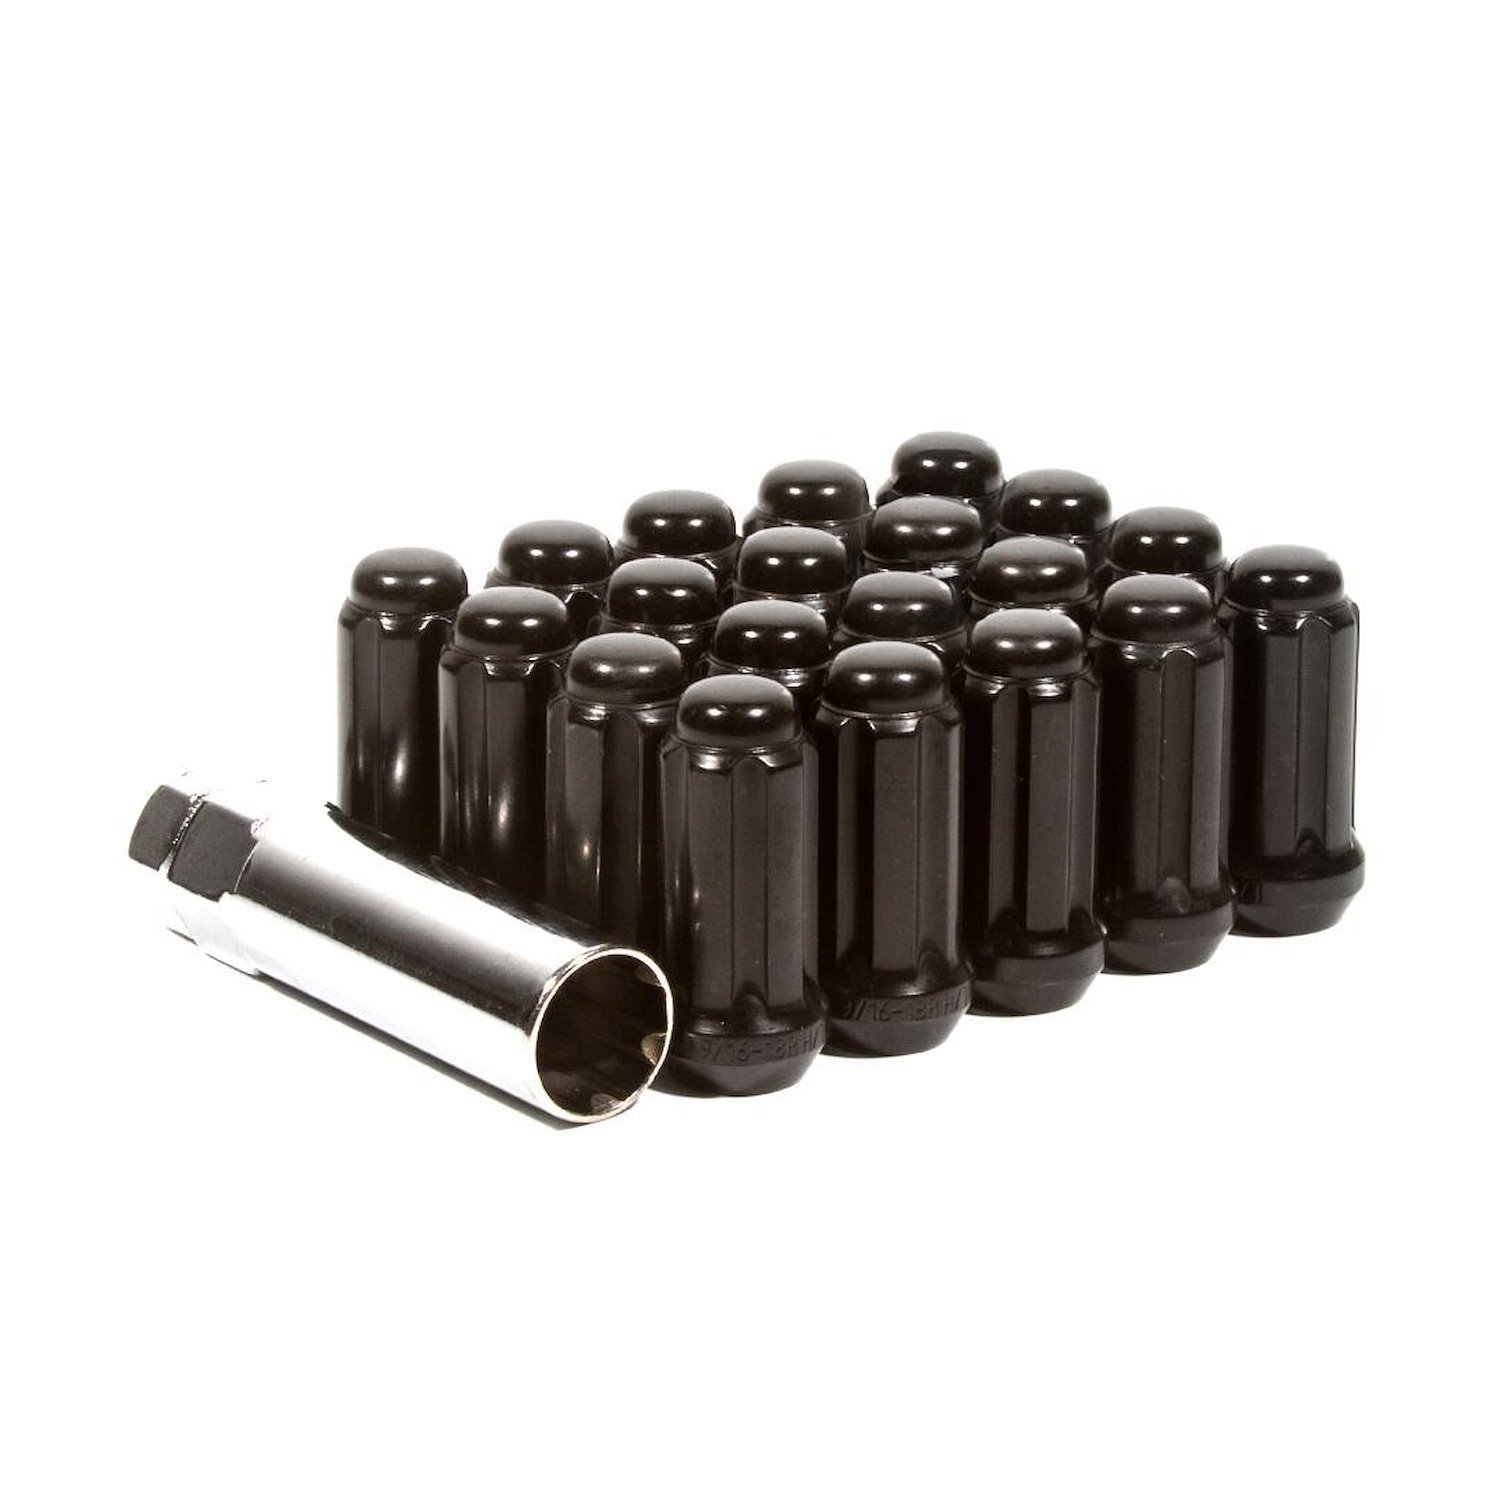 LK-W5614SEB Lug Kit, Extended Thread Spline, M14X1.5, 6 Lug Kit, Black, 24 Nuts